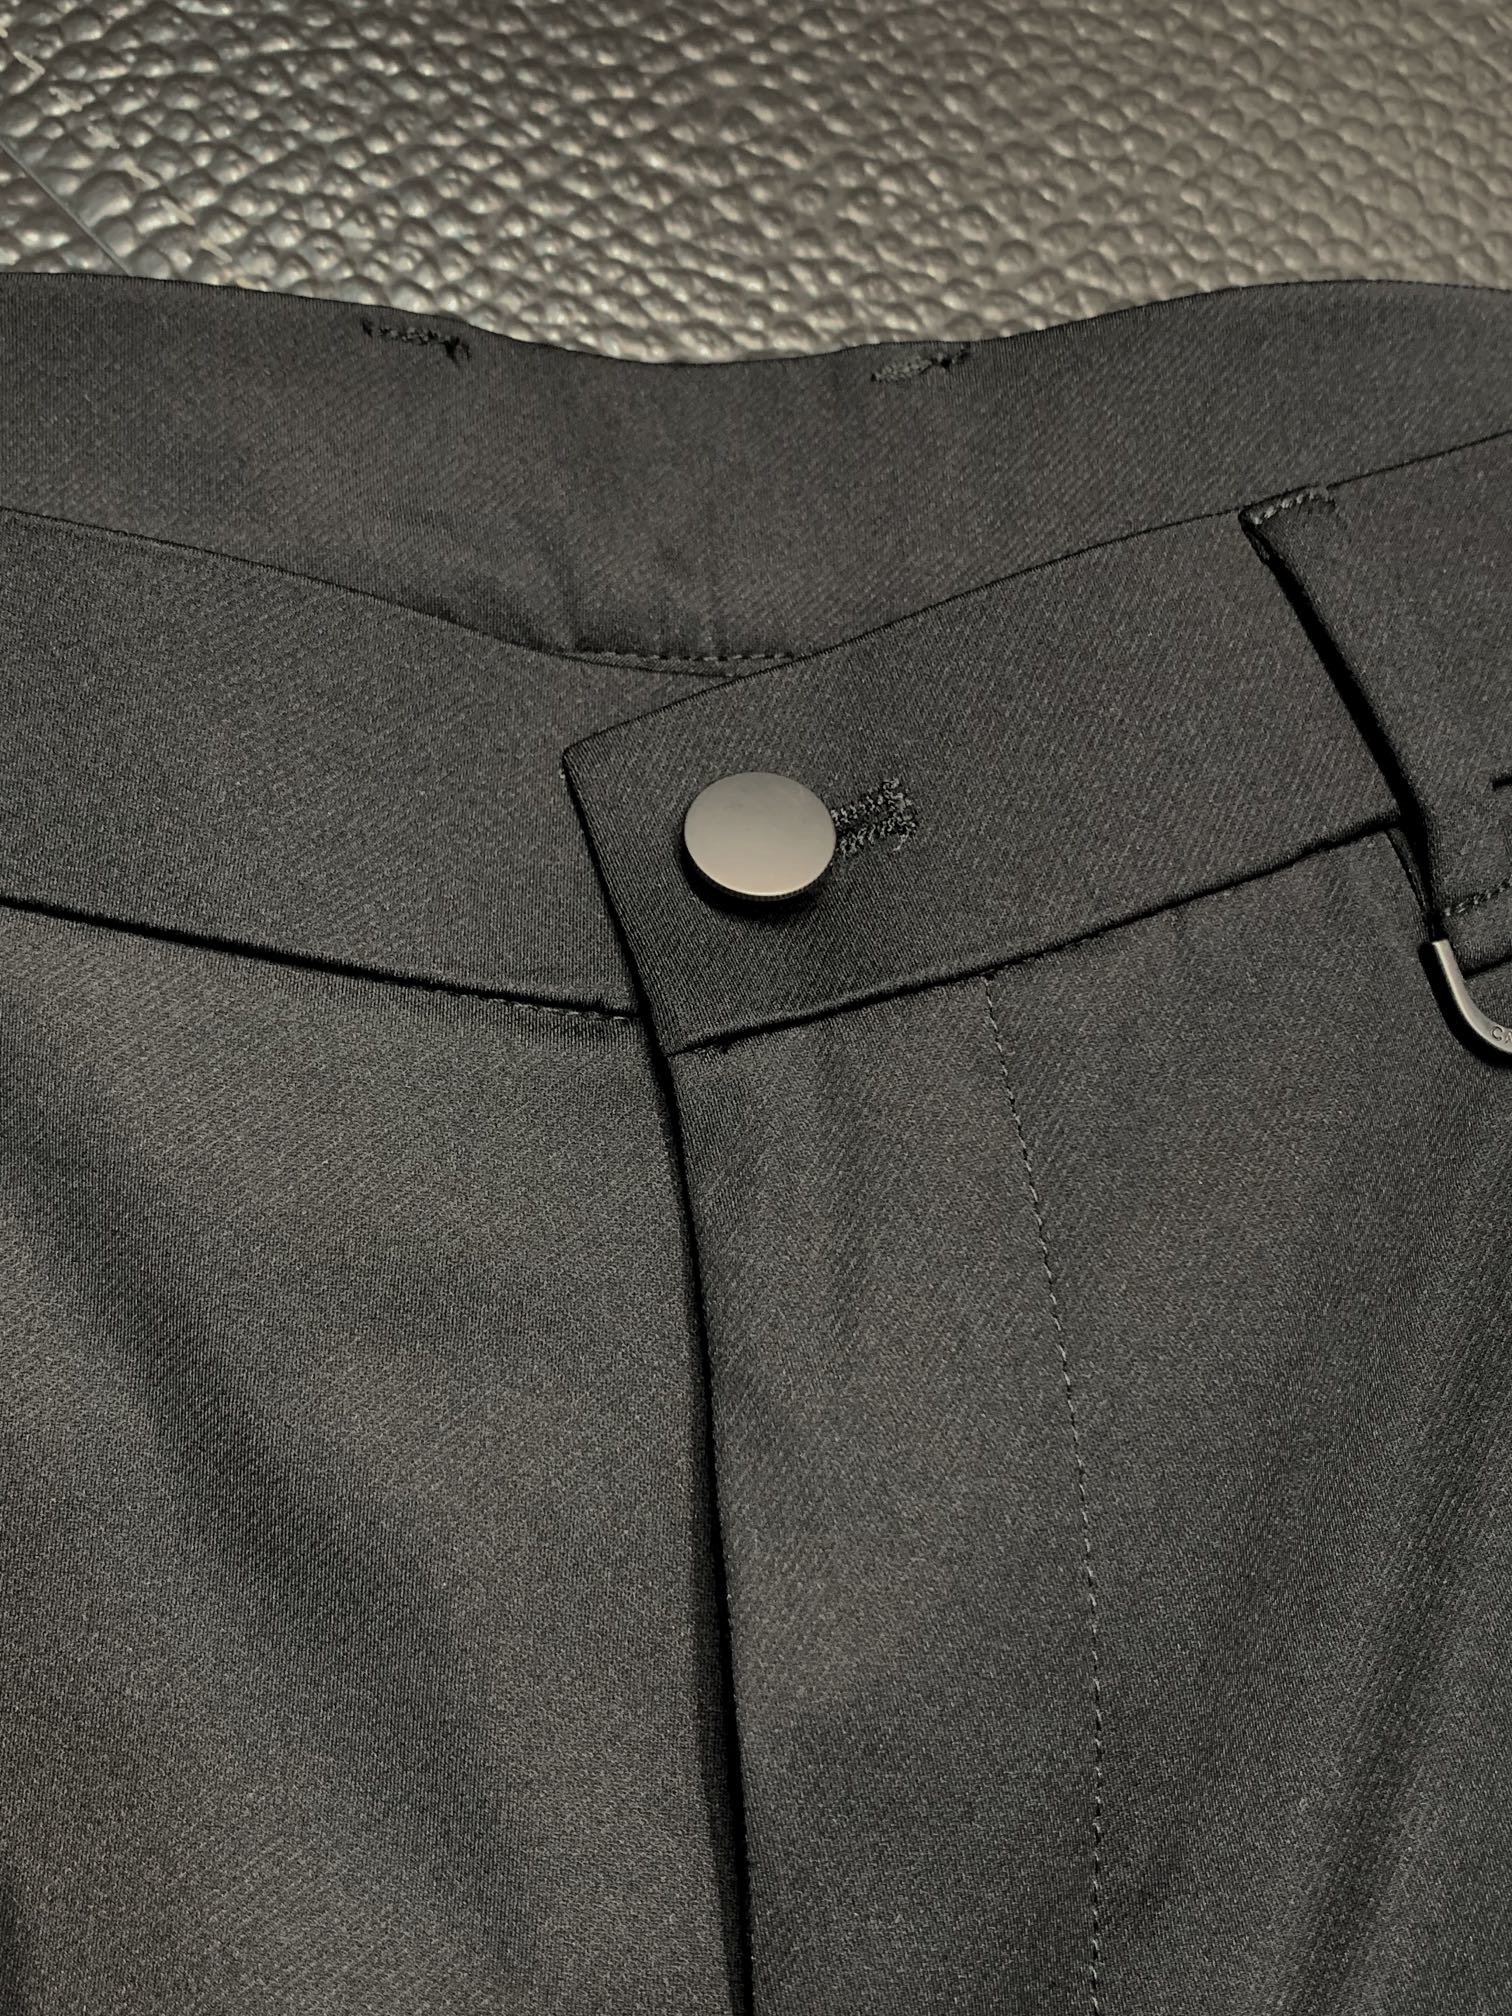 BBR巴宝莉独家专供新款休闲西裤高端版本！专柜定制面料透气舒适度高细节无可挑剔品牌元素设计理念体现高品质